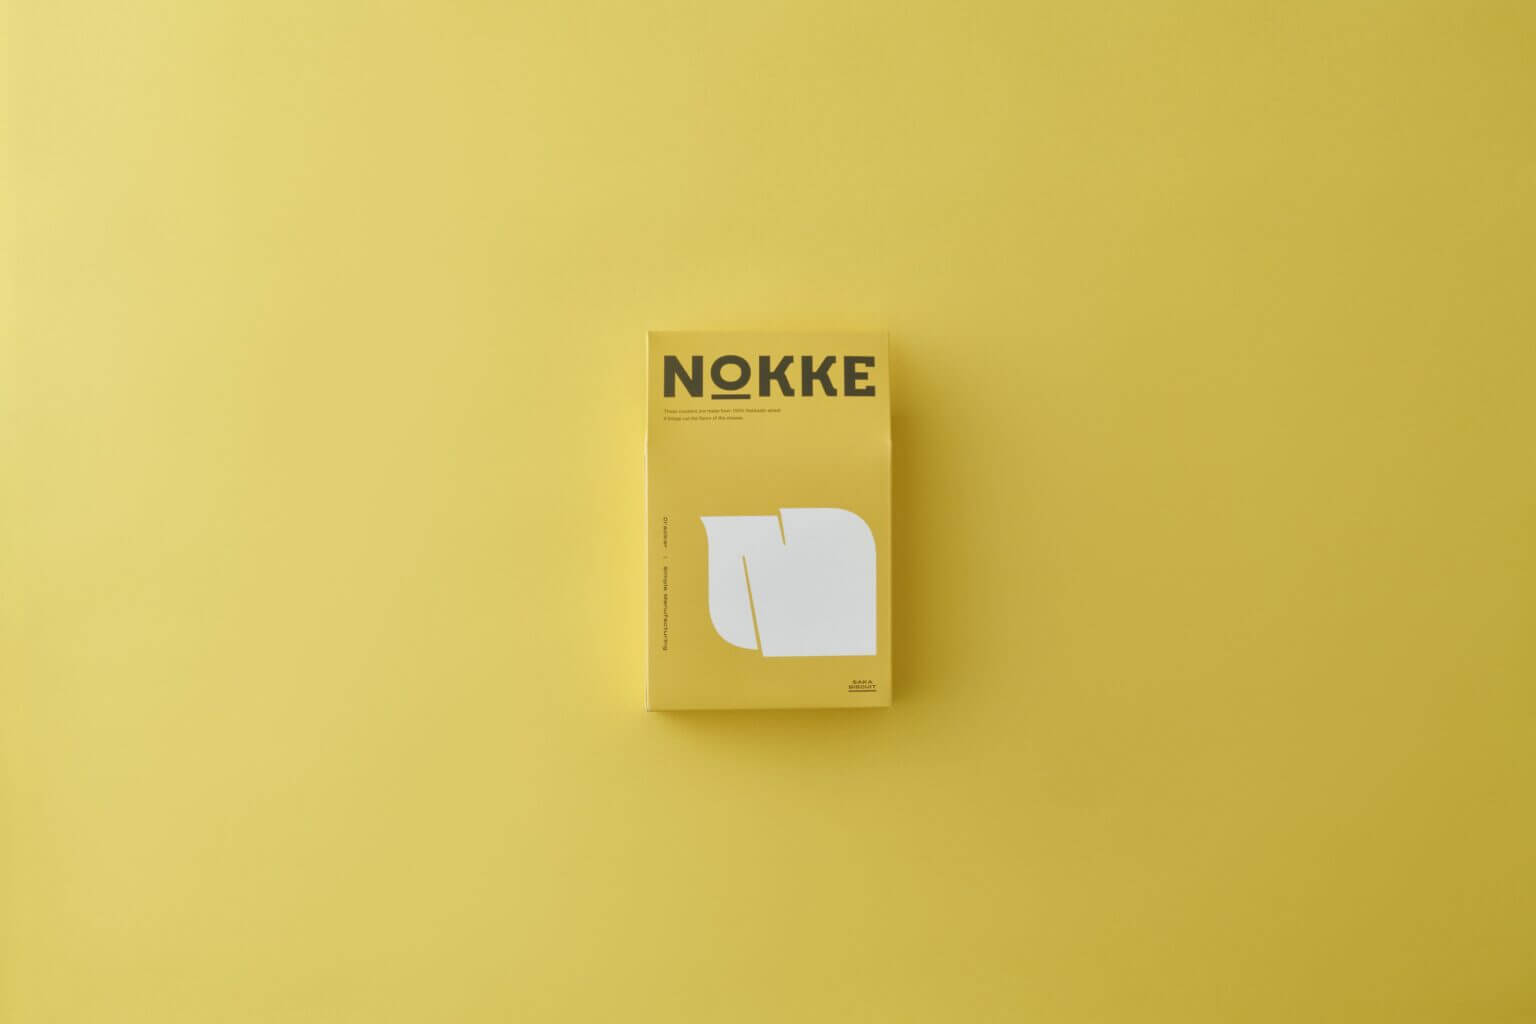 北海道産小麦粉100%を使用したクラッカー『NOKKE』